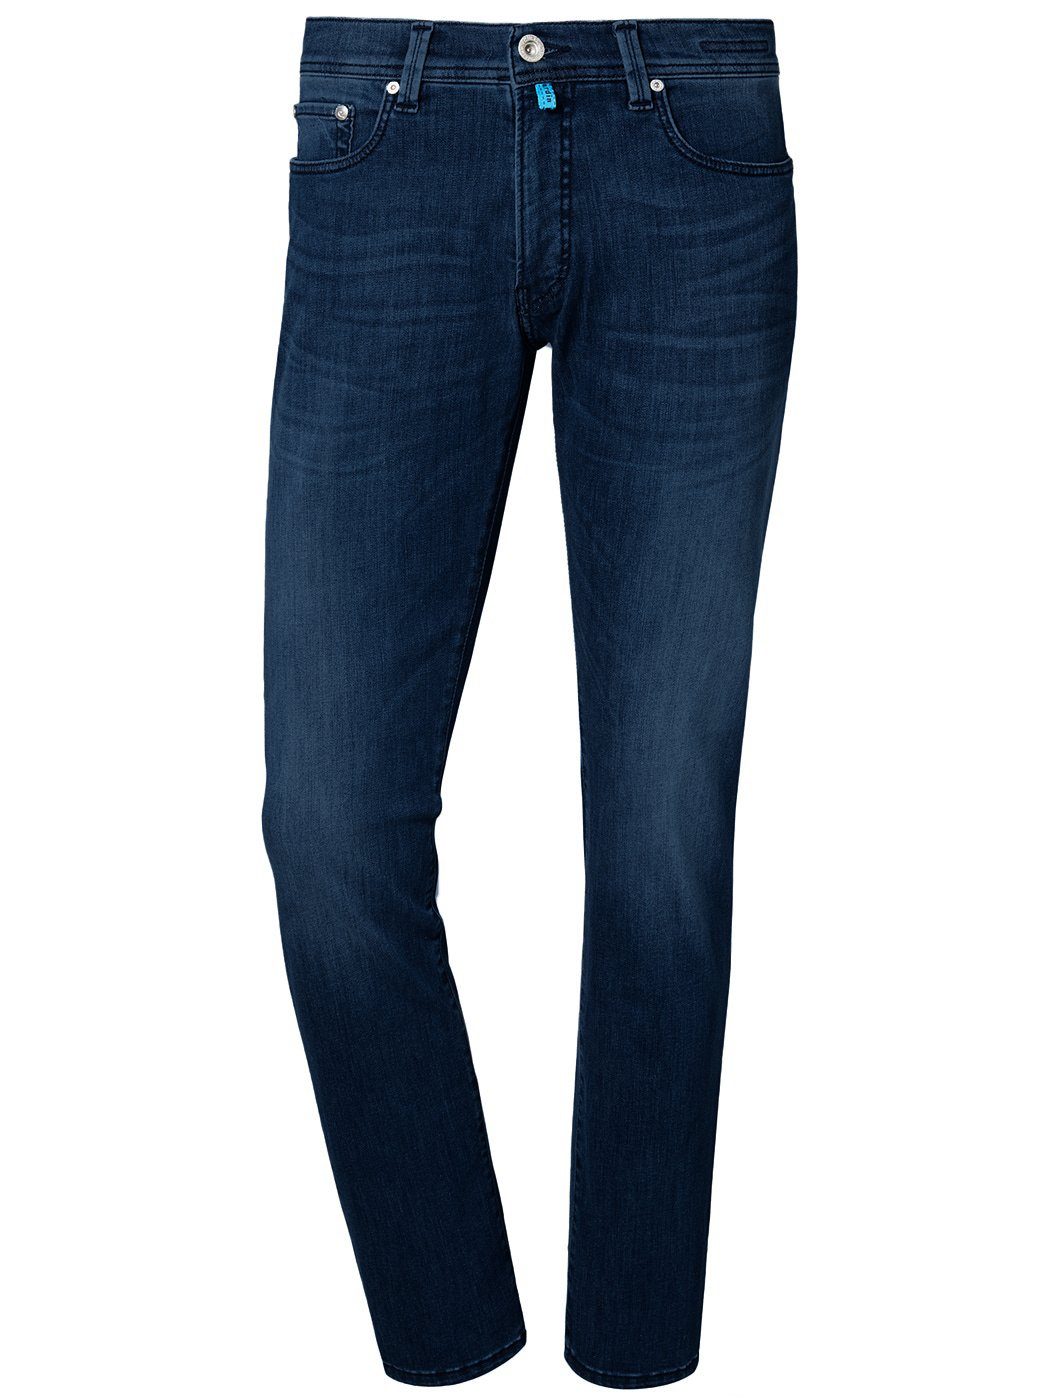 Pierre Cardin 5-Pocket-Jeans washed out 8880.70 3451 FUTUREFLEX light CARDIN LYON blue dark PIERRE